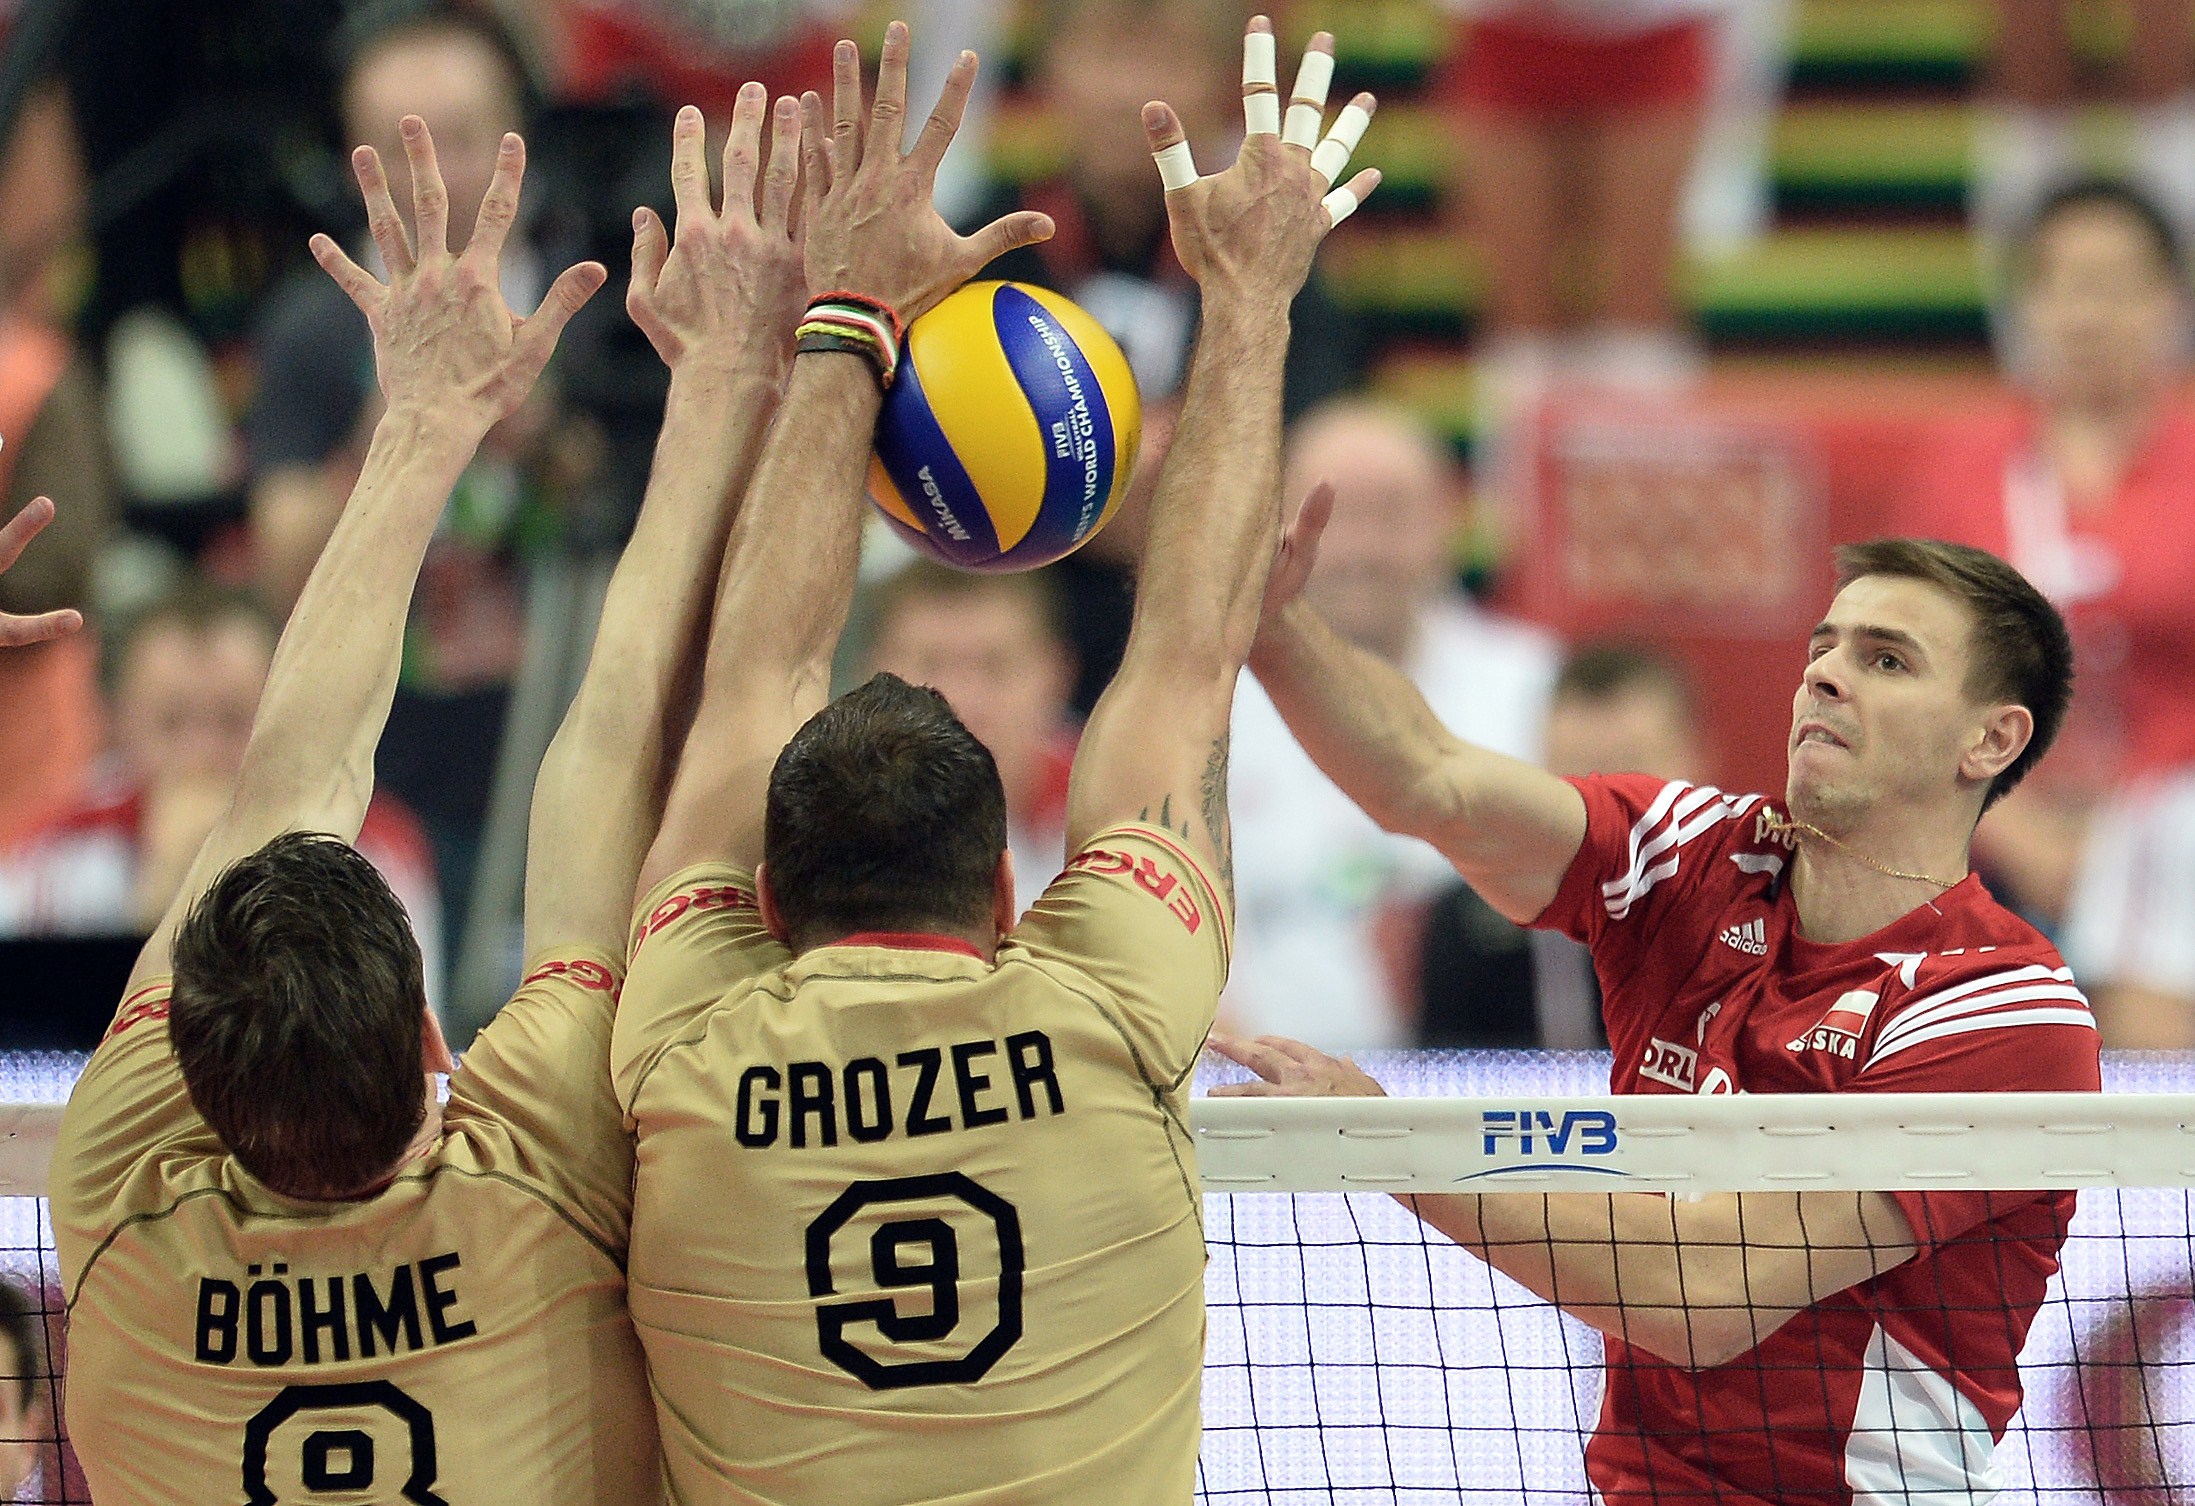 Volleyball-WM Finale Ergebis: Polen zum zweiten Mal Weltmeister, gewinnt mit 3:1 gegen Brasilien